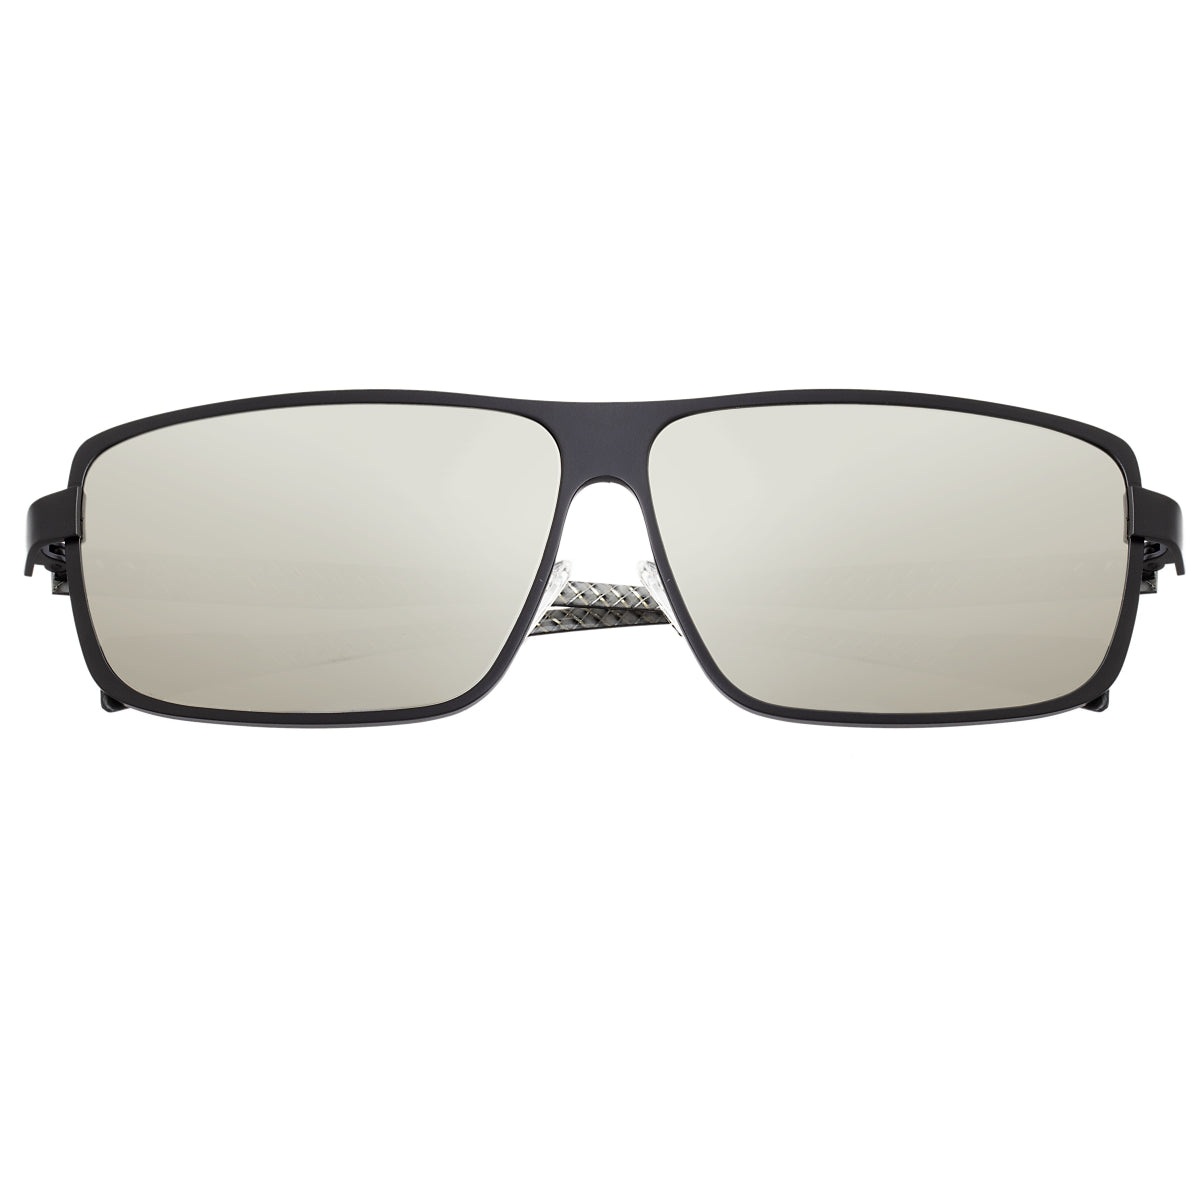 Breed Finlay Men's Sunglasses Black Frame Black Lens BSG033BK